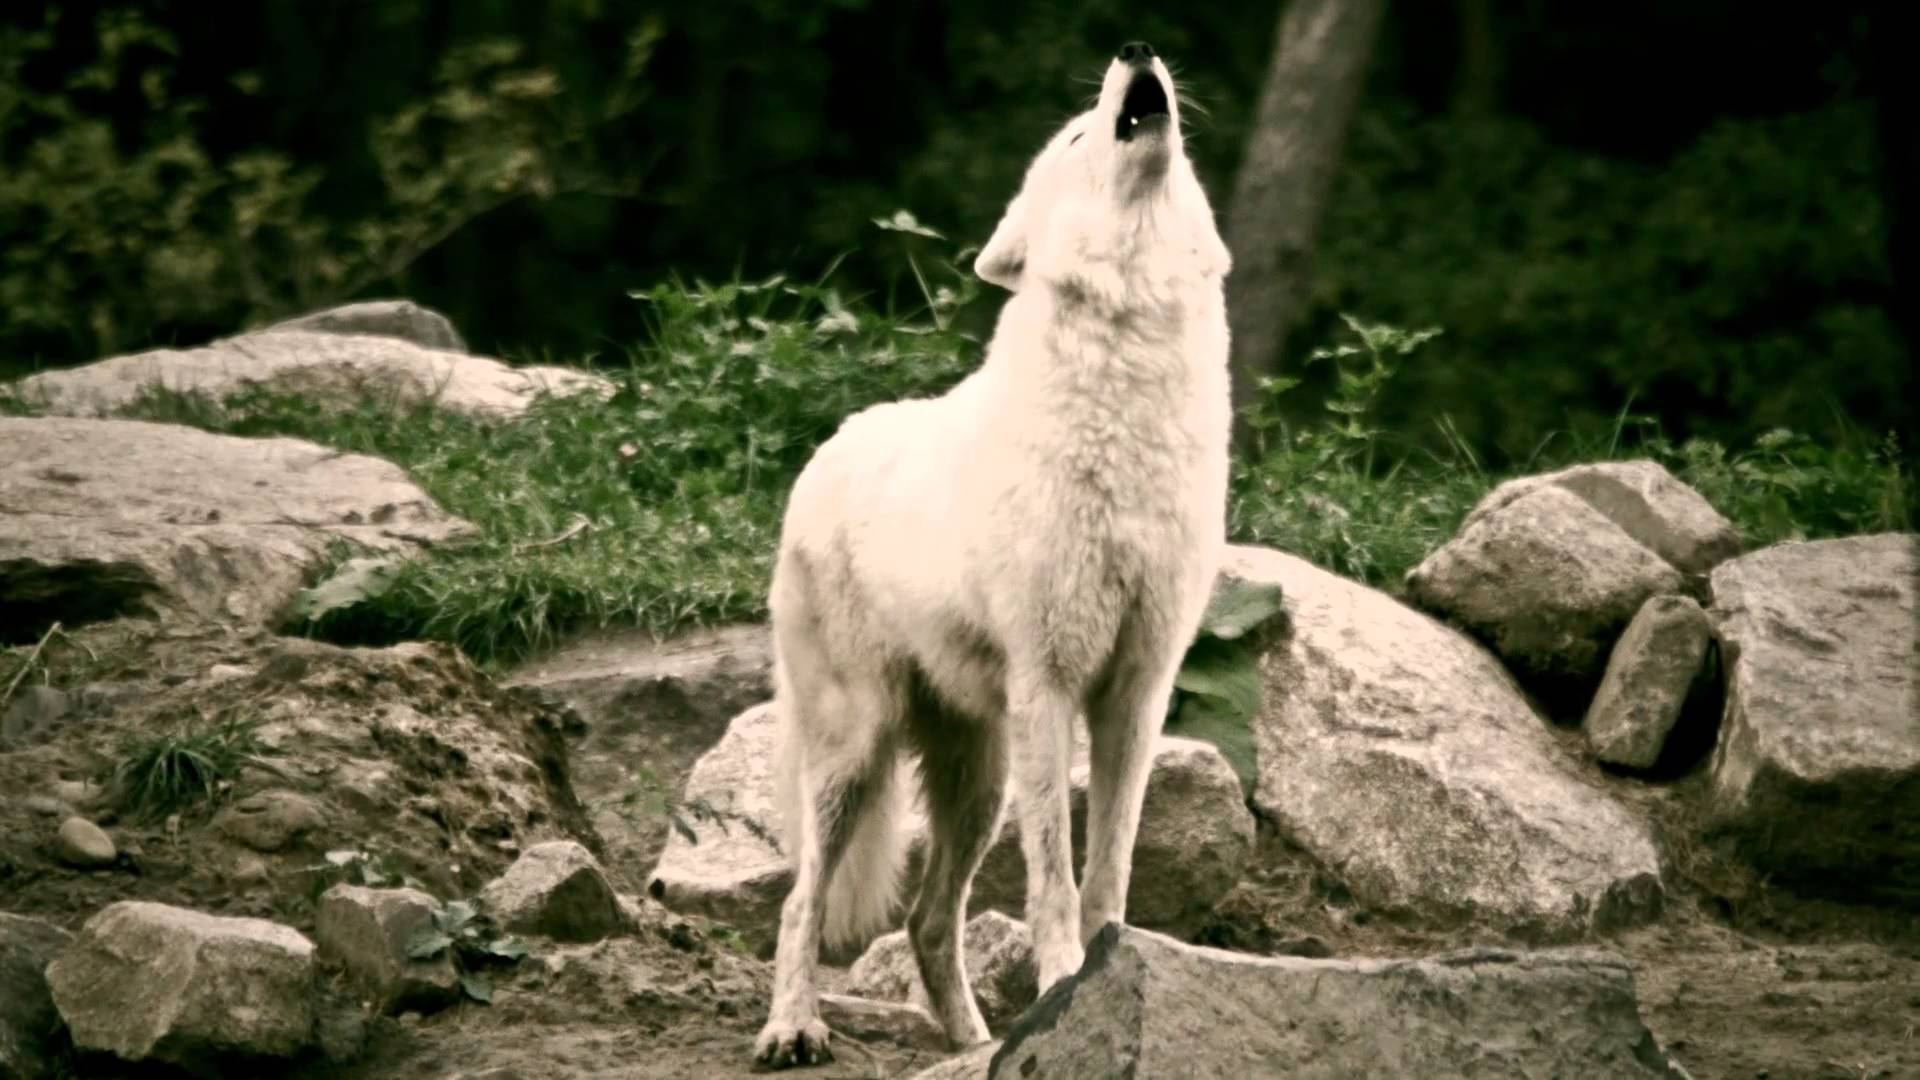 White Wolves howling in the deer park - Schaurig schön. Wölfe heulen im Wildpark.